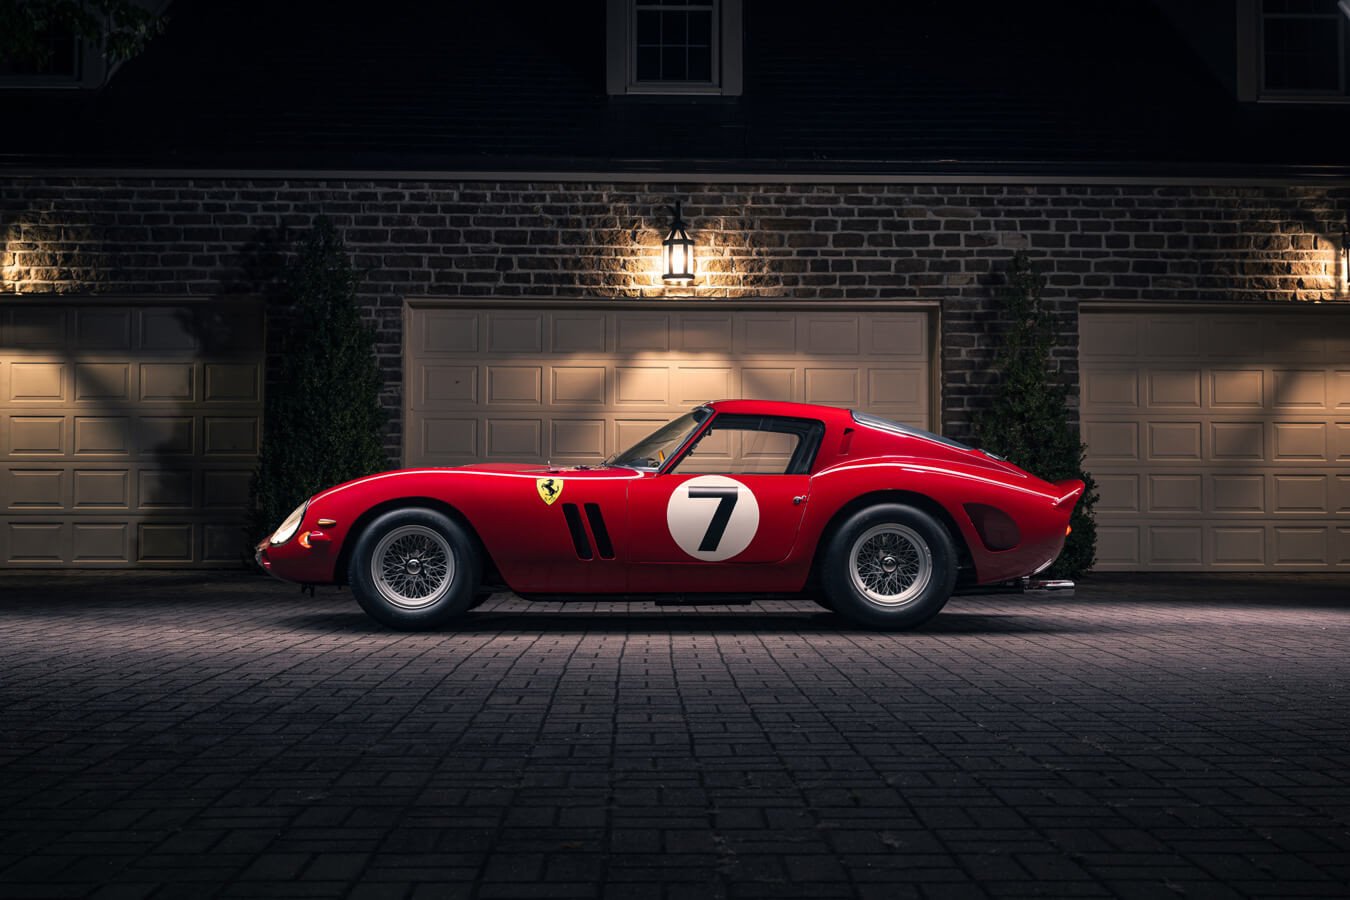 Immagine di Oltre 50 milioni di euro, questa Ferrari potrebbe diventare l'auto più costosa di sempre